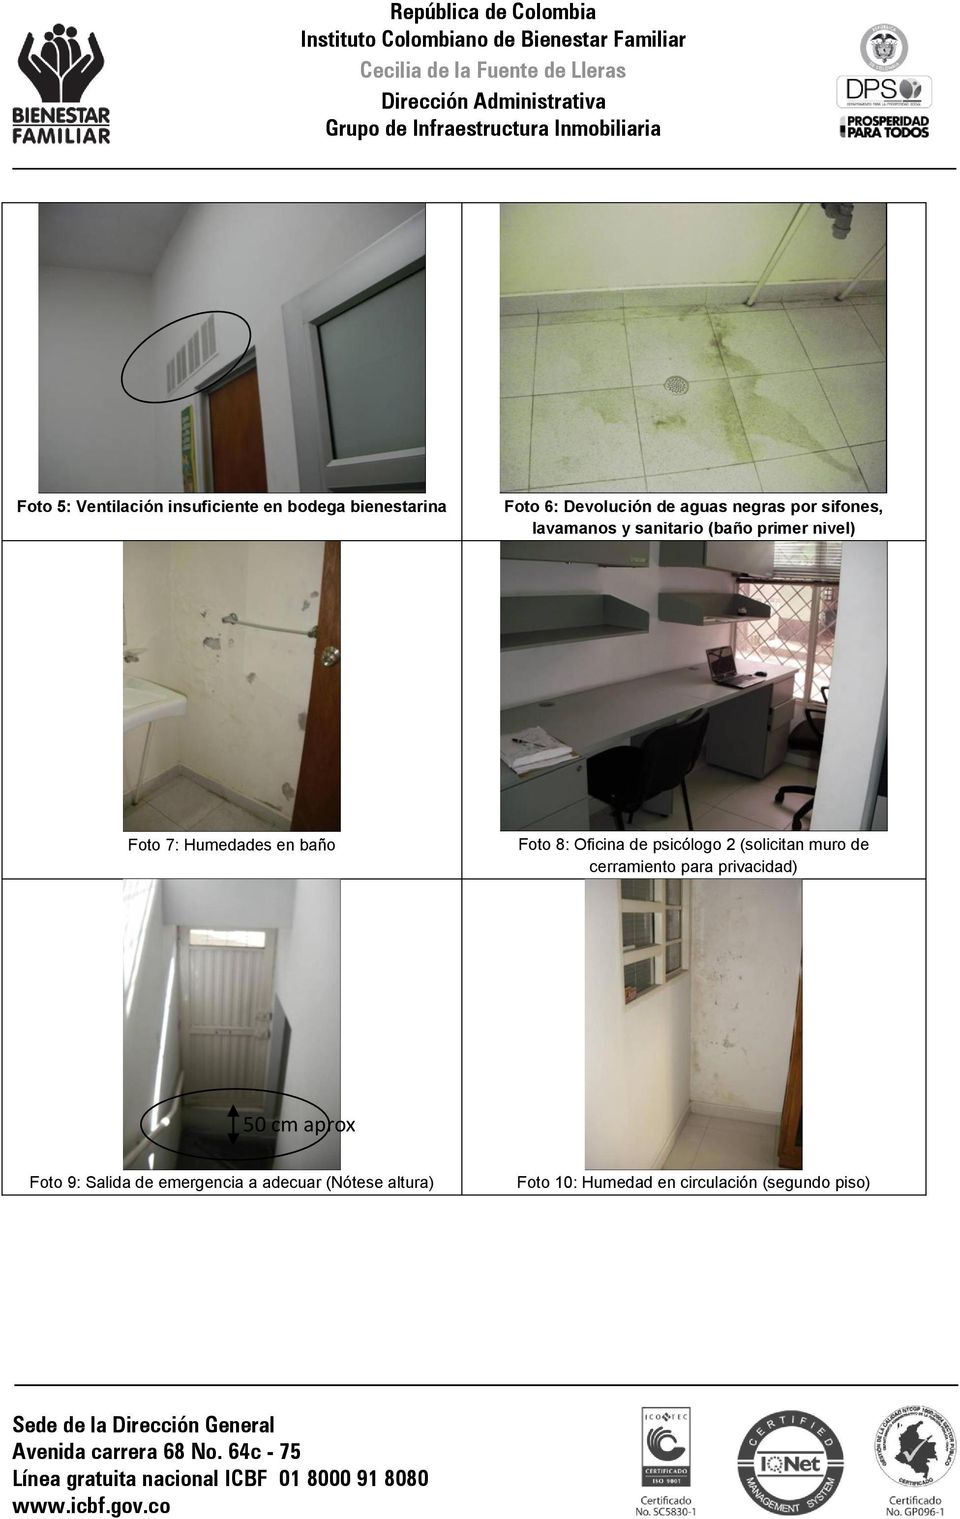 Oficina de psicólogo 2 (solicitan muro de cerramiento para privacidad) 50 cm aprox Foto 9: